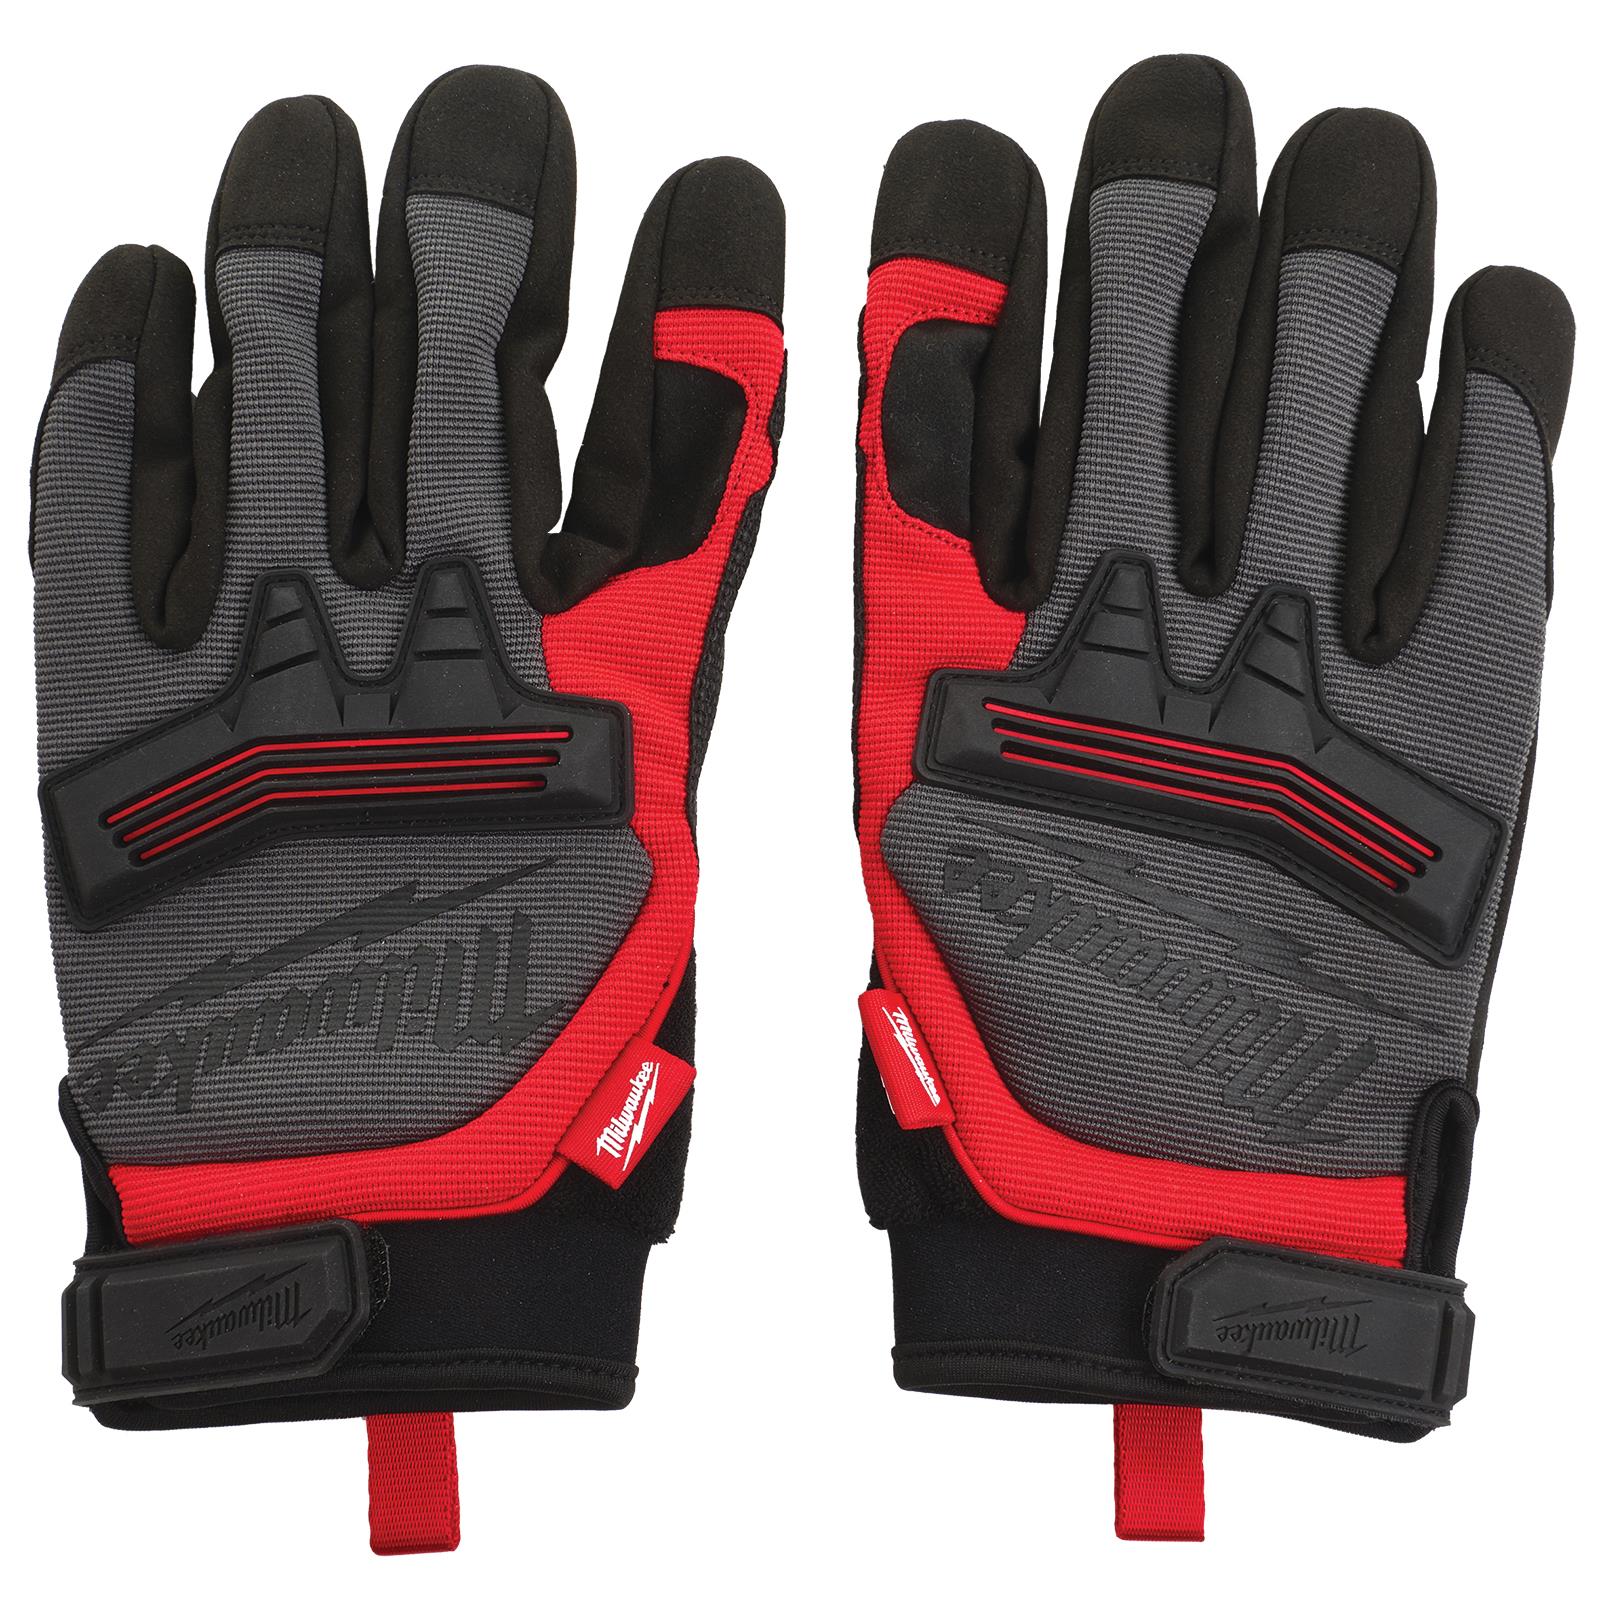 Milwaukee Safety Gloves Demolition Glove Size 8 / M Medium